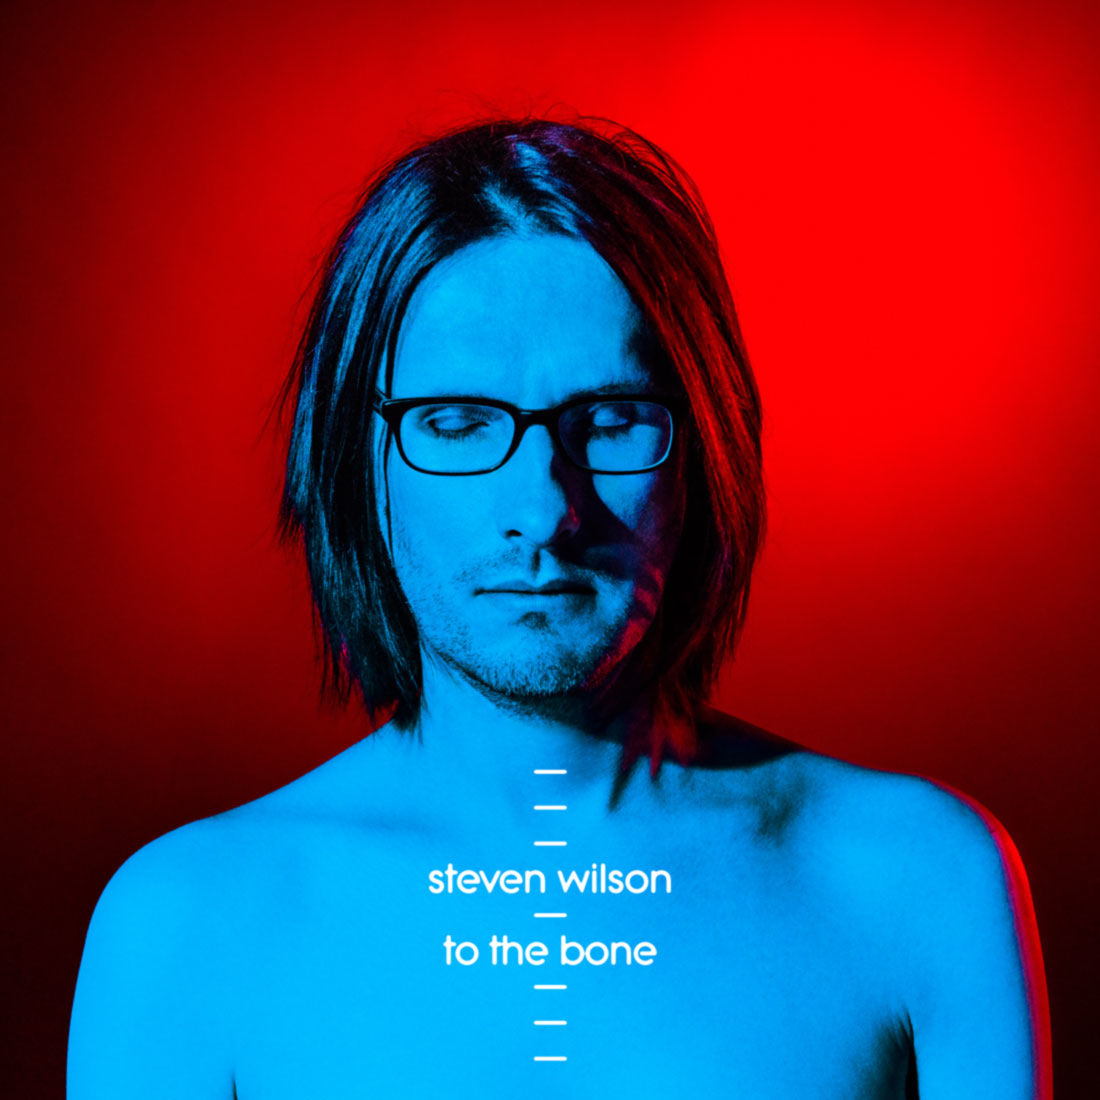 STEVEN WILSON nuevo disco “To the Bone” para agosto, nuevo video “Pariah” en linea